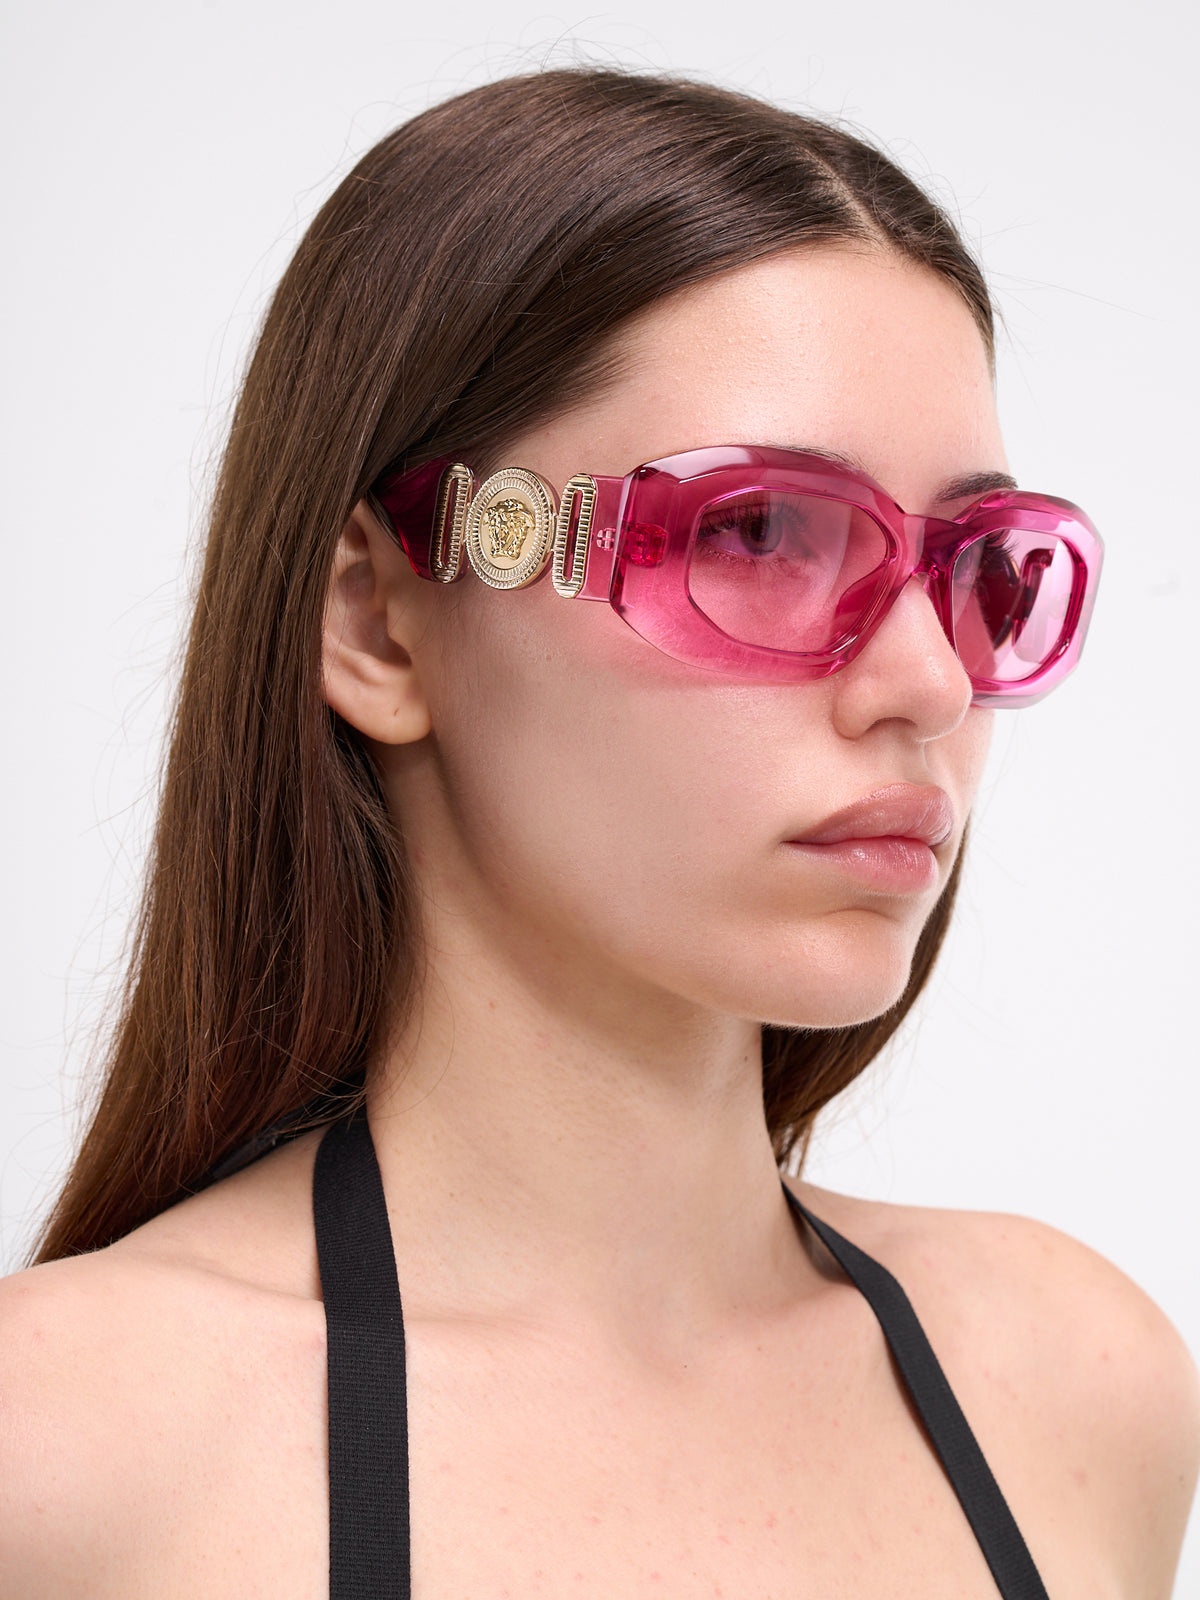 Transparent Rectangular Sunglasses (0VE4425U-PINK-TRANSPARENT)